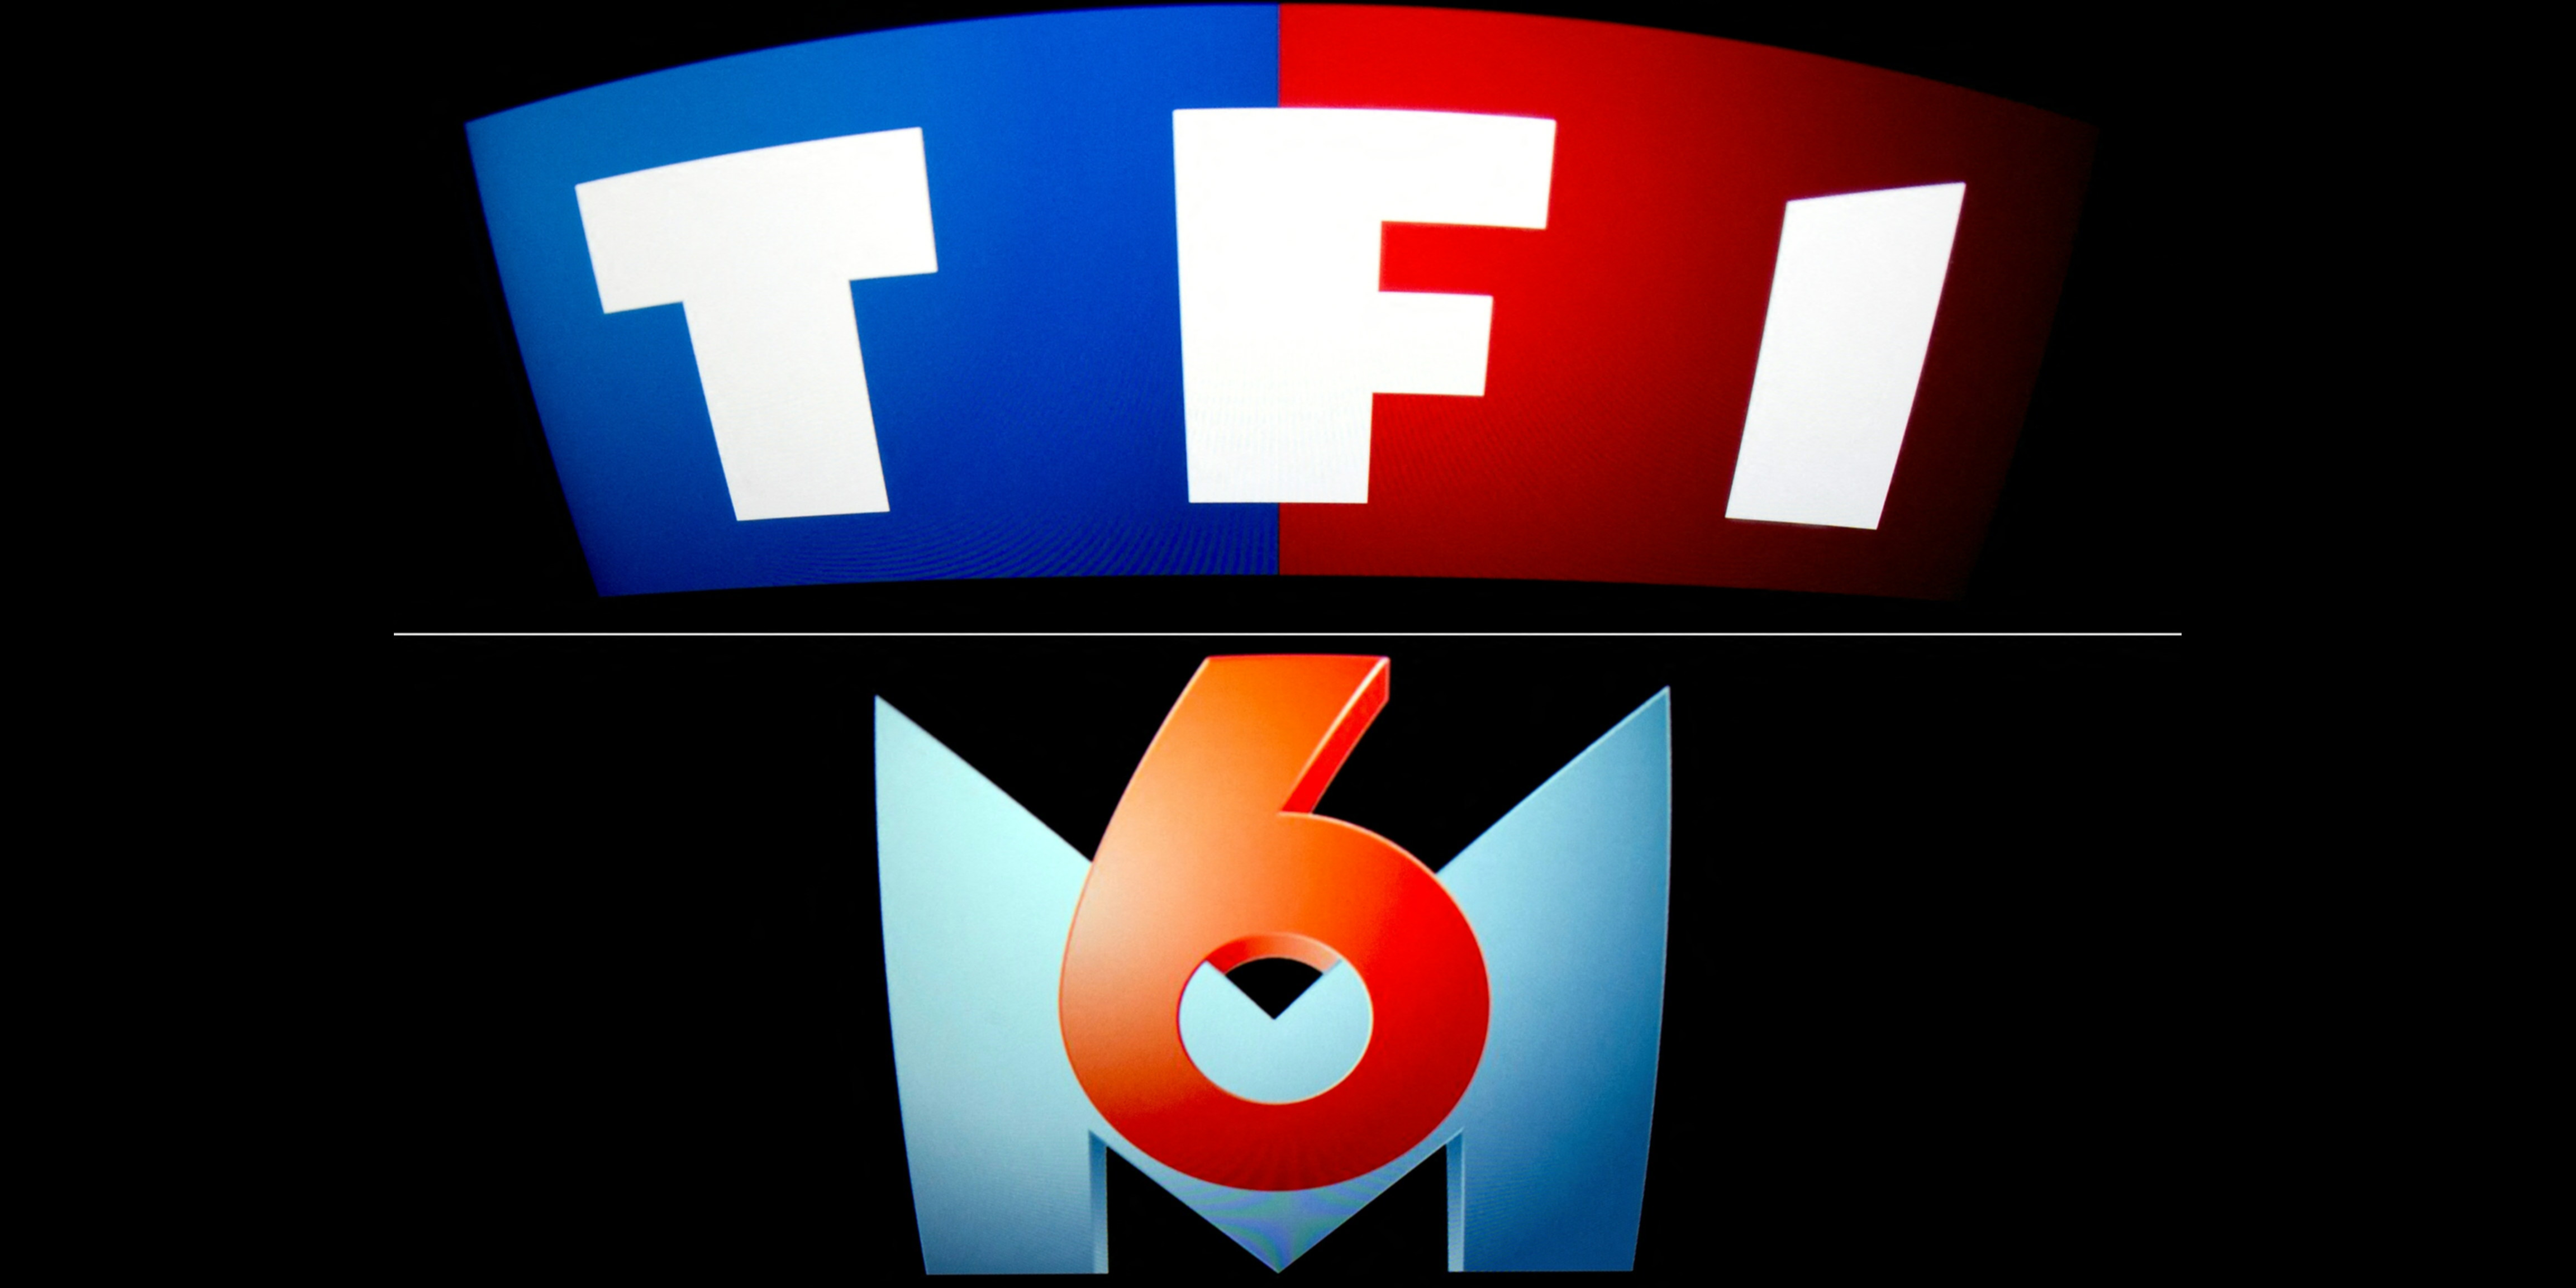 Logique capitalistique : les groupes TF1 et M6 vont fusionner